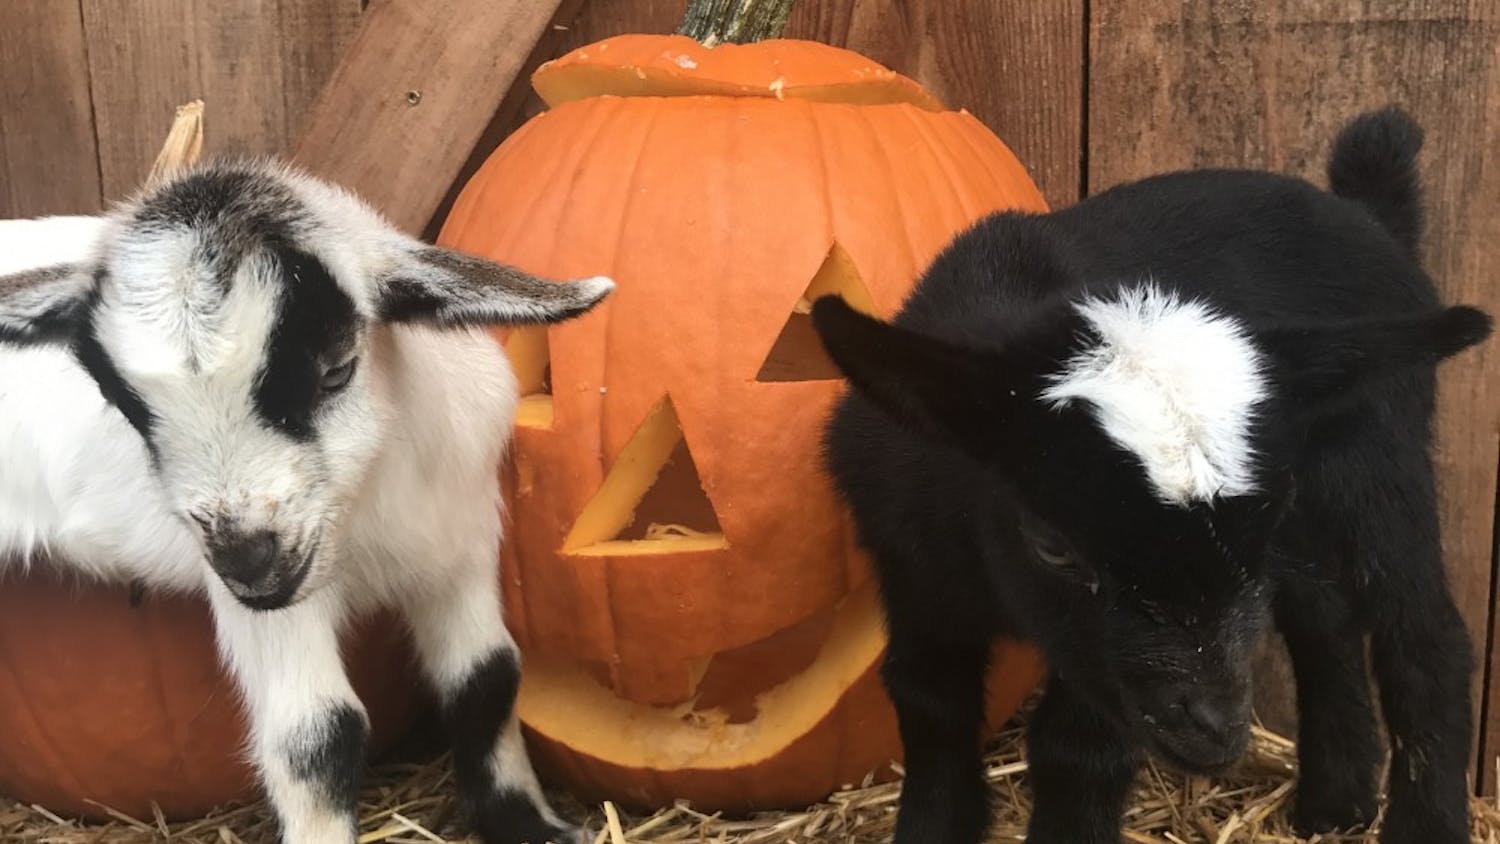 Goats with Pumpkins